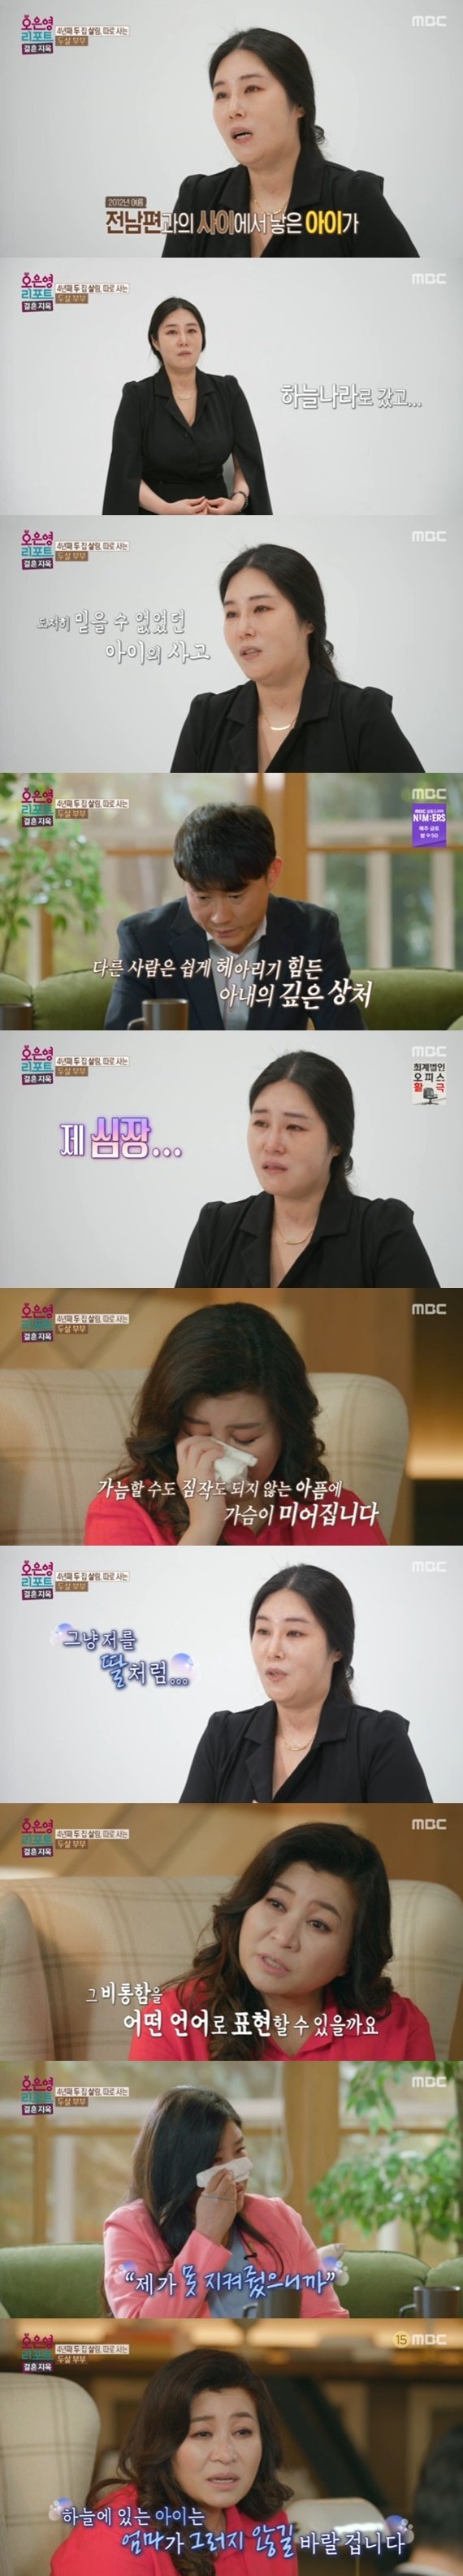 '결혼지옥' 오은영, 아들 잃은 아내 사연에 눈물…"표현하기 힘든 비통함" [RE:TV]